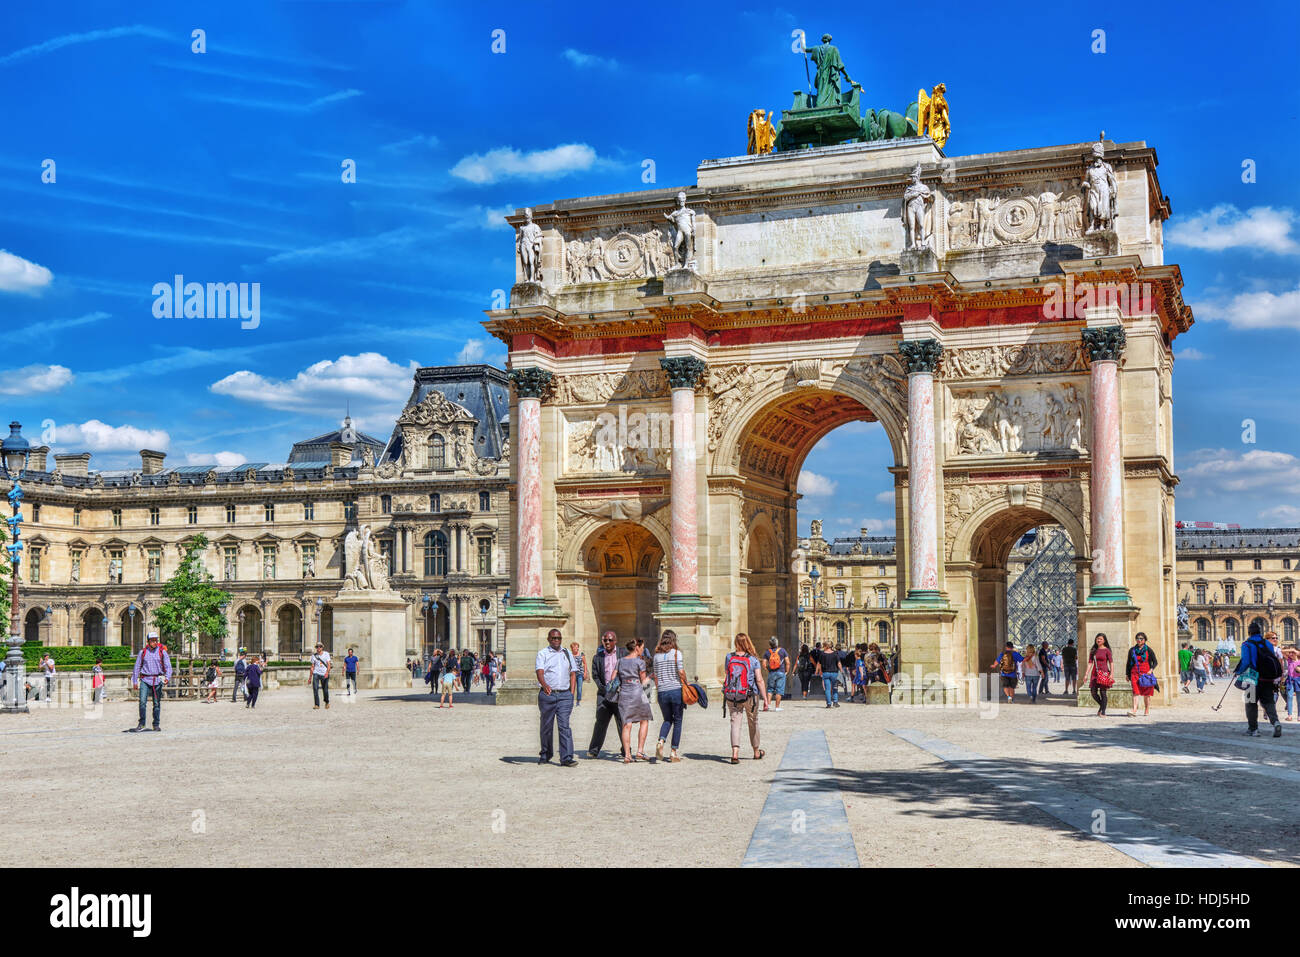 Parigi, Francia - Luglio 06, 2016 : Arc de triomphe du Carrousel (1806-1808) e la gente intorno, progettata da Charles Percier vicino al Louvre, Parigi, Francia Foto Stock